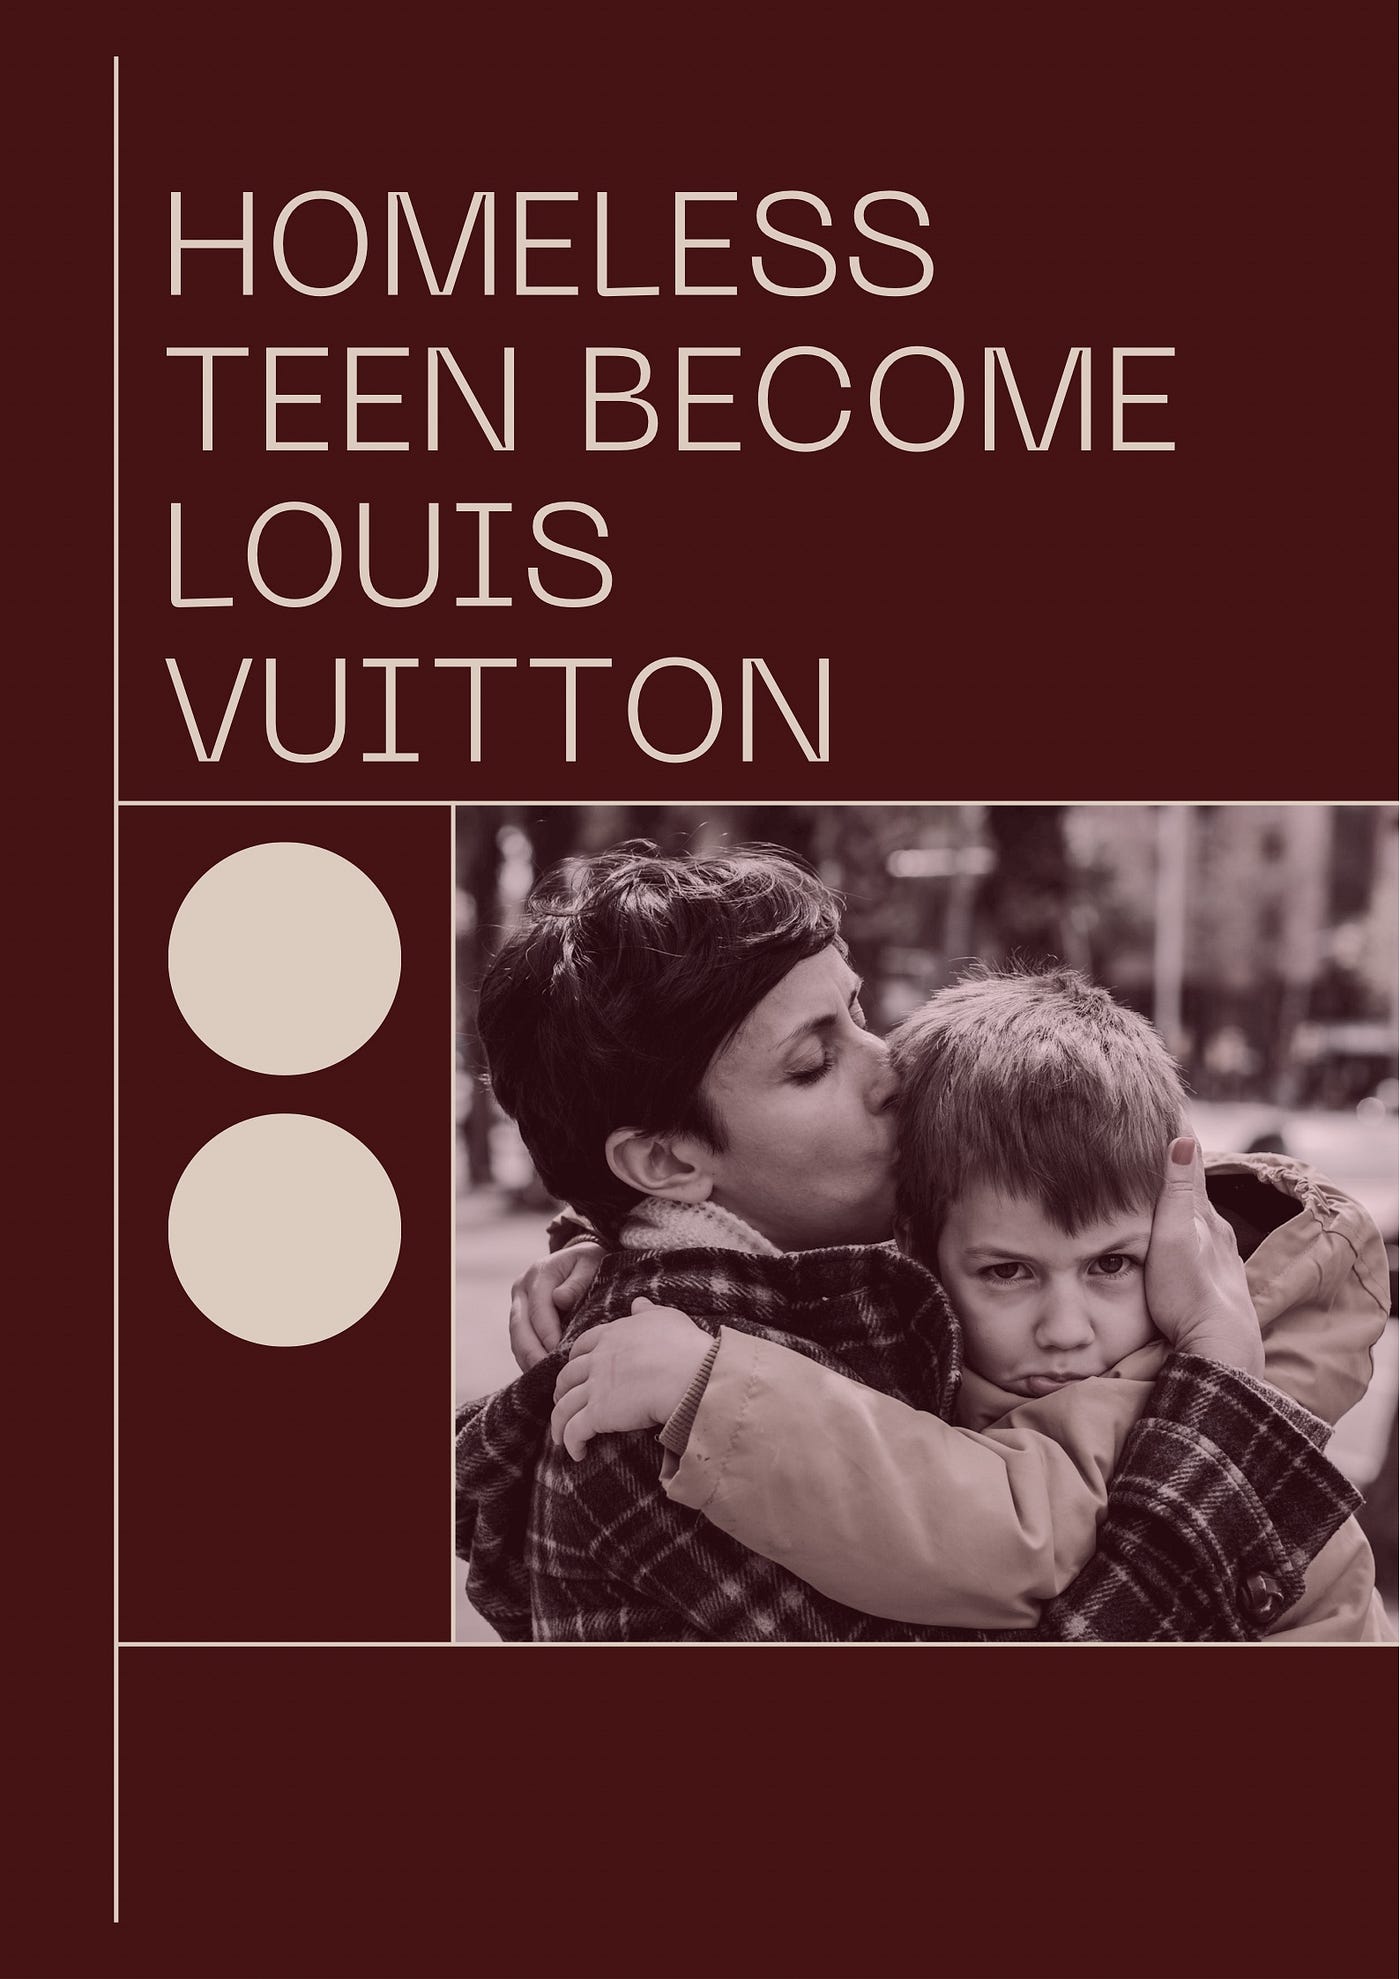 How a homeless teen created a Louis Vuitton, by Puneet kaur